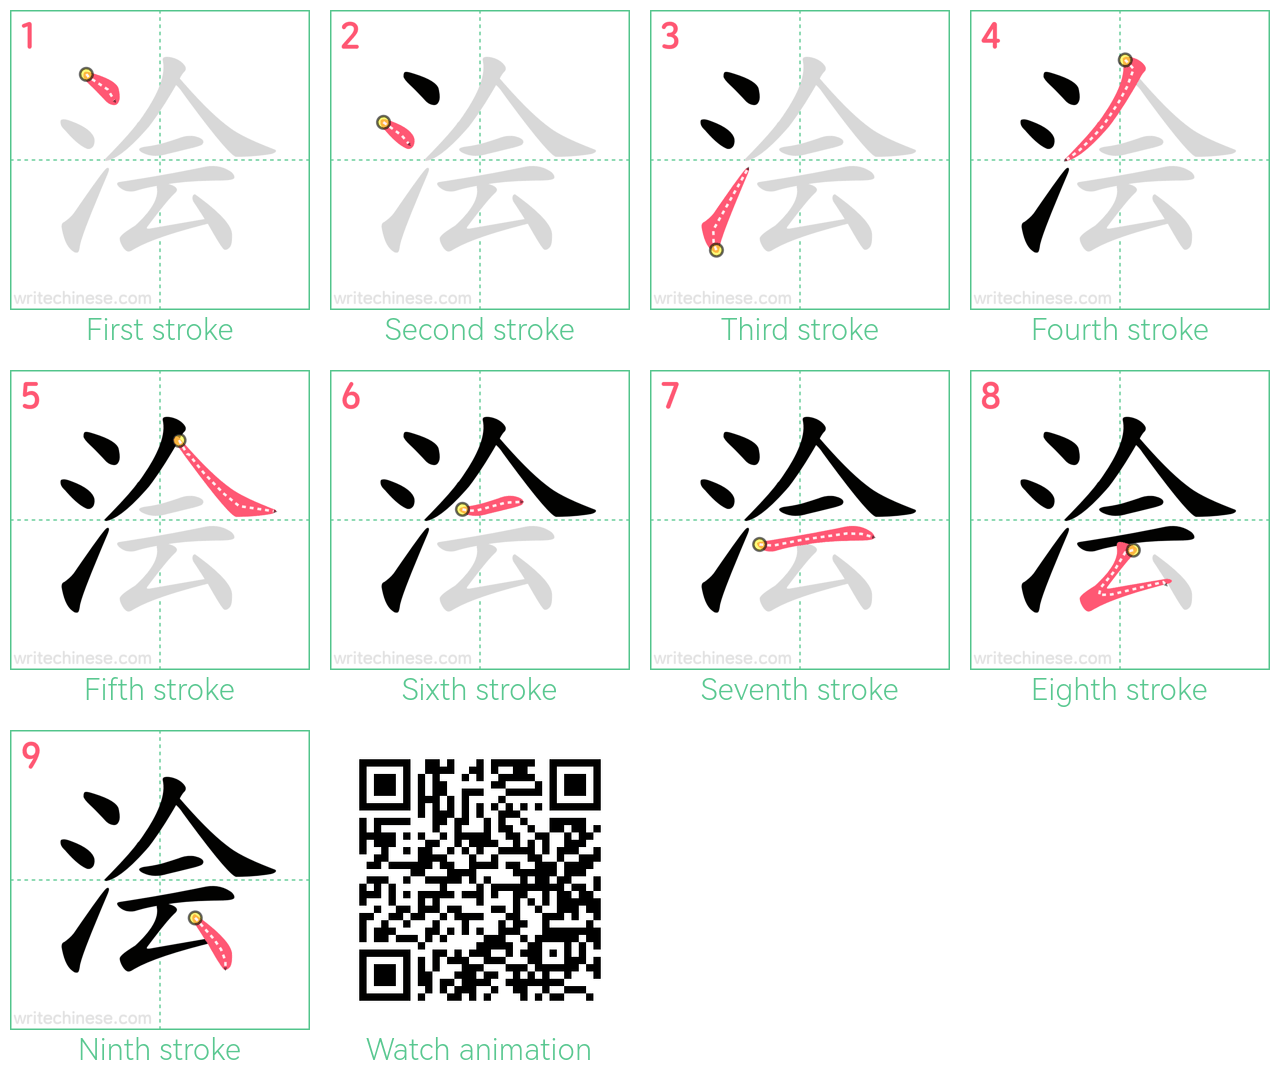 浍 step-by-step stroke order diagrams